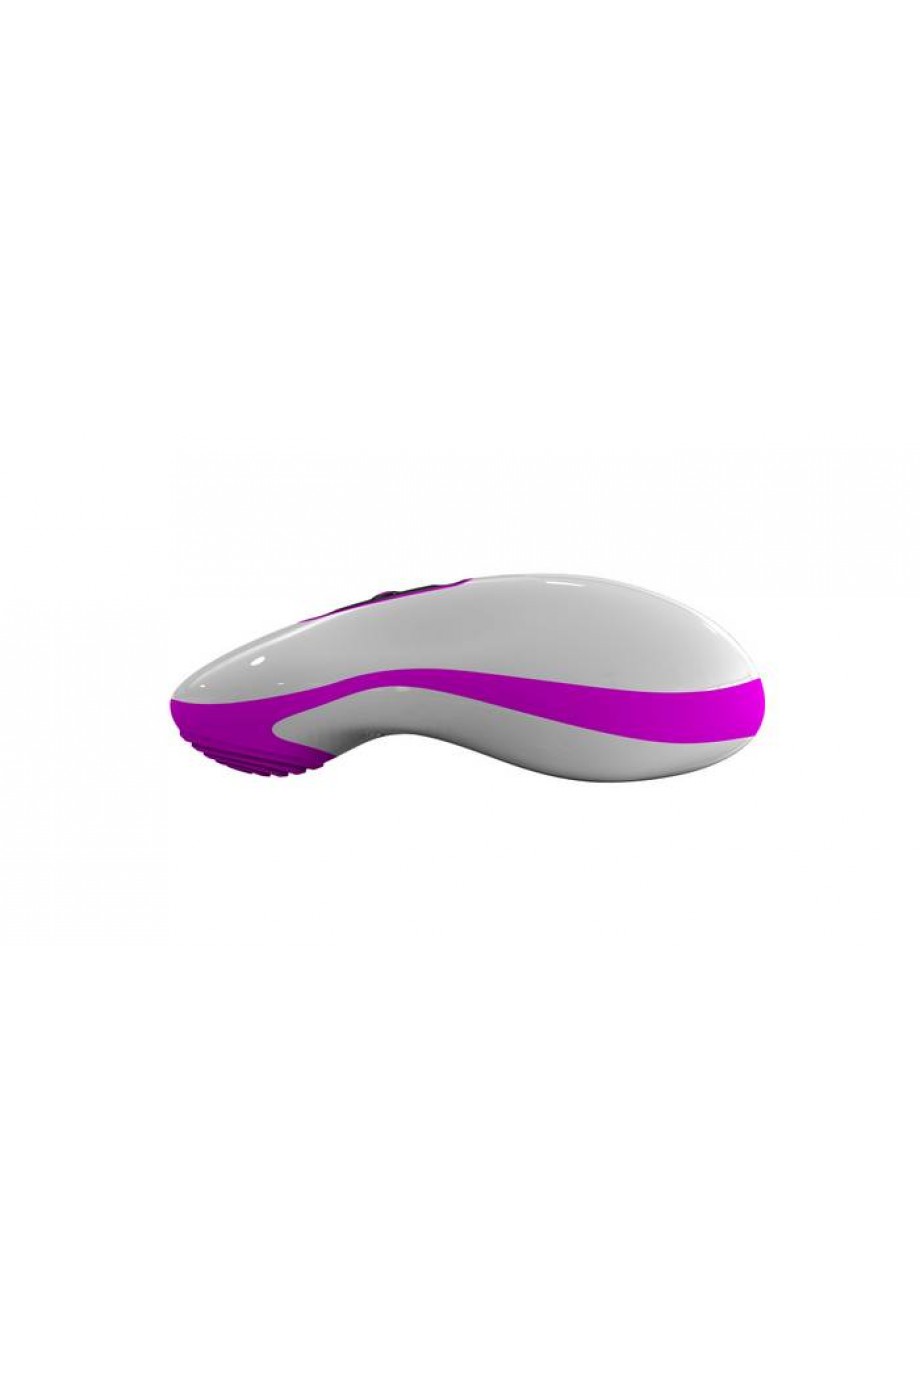 Вибростимулятор Mouse бело-фиолетовый 10 см